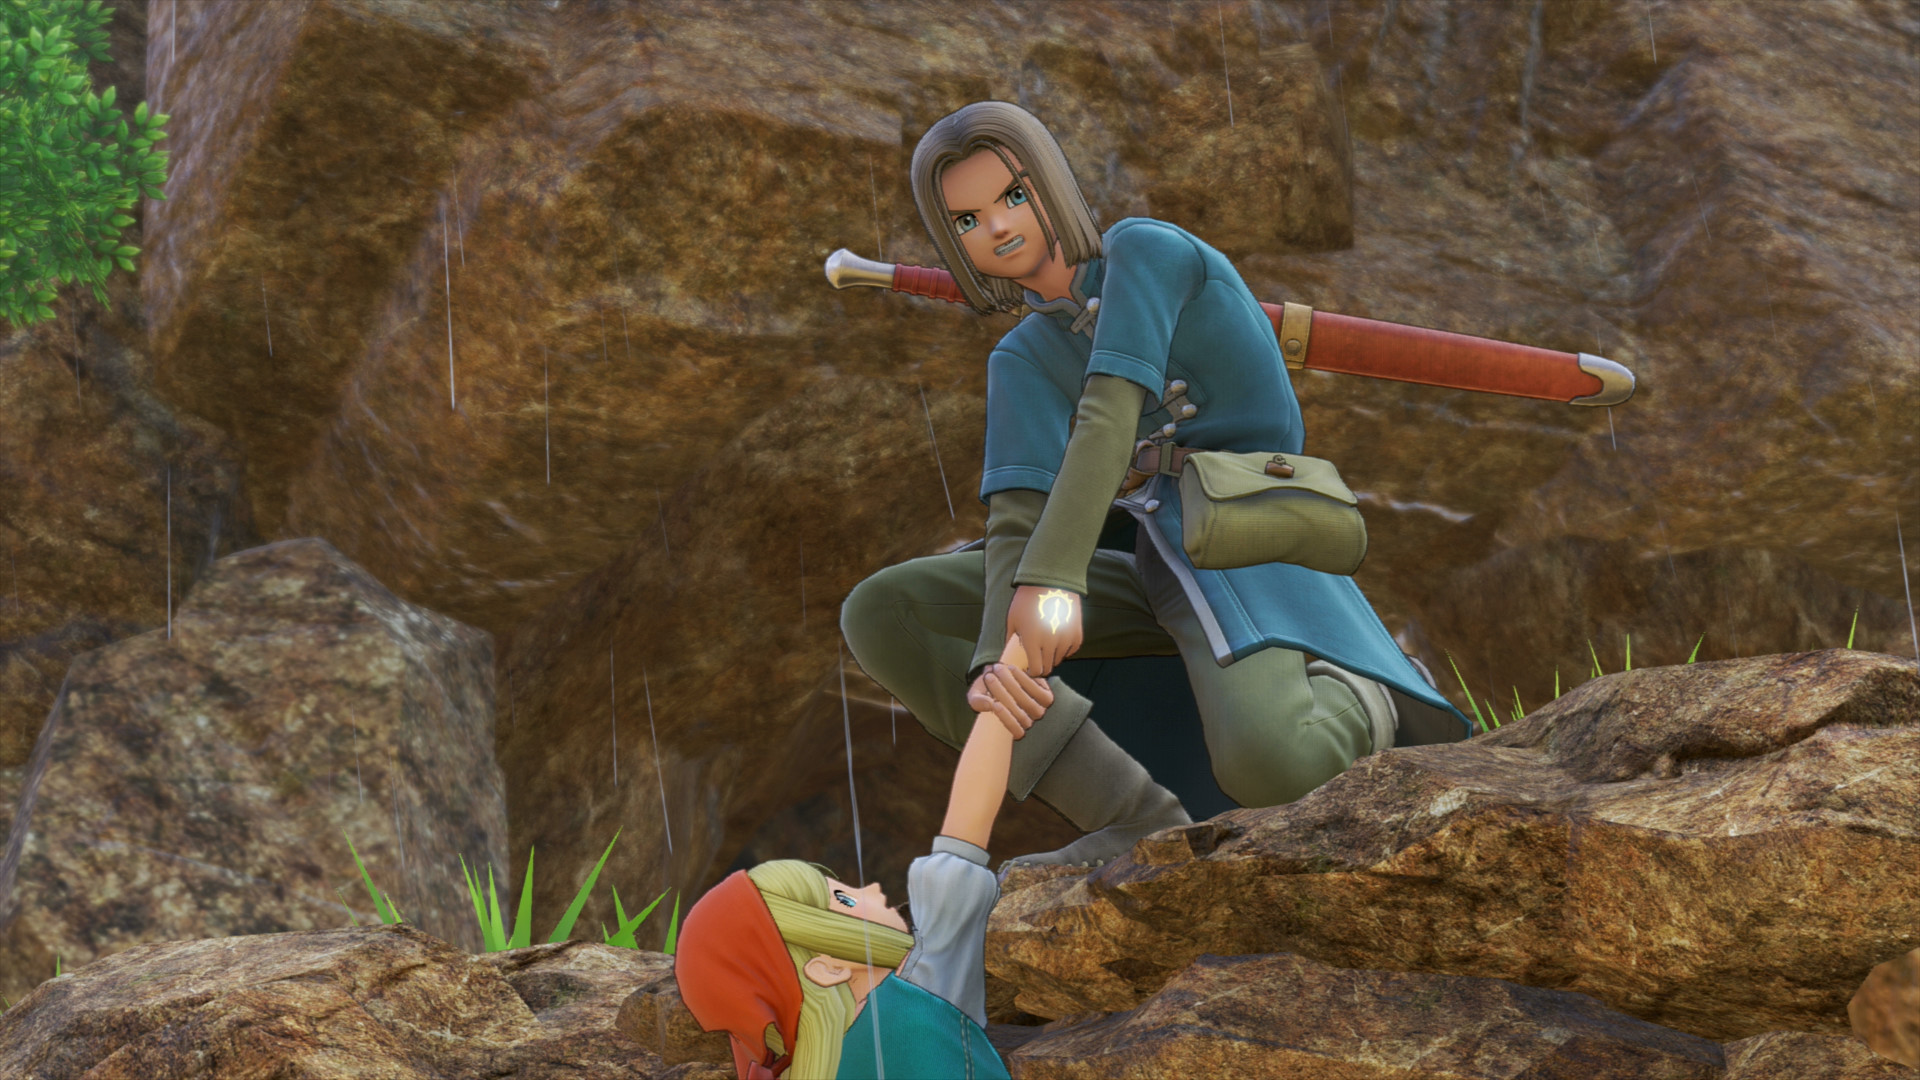 Най -добри аниме игри: Dragon Quest XI. Изображението показва момче, което дърпа момиче нагоре по скалиста перваза